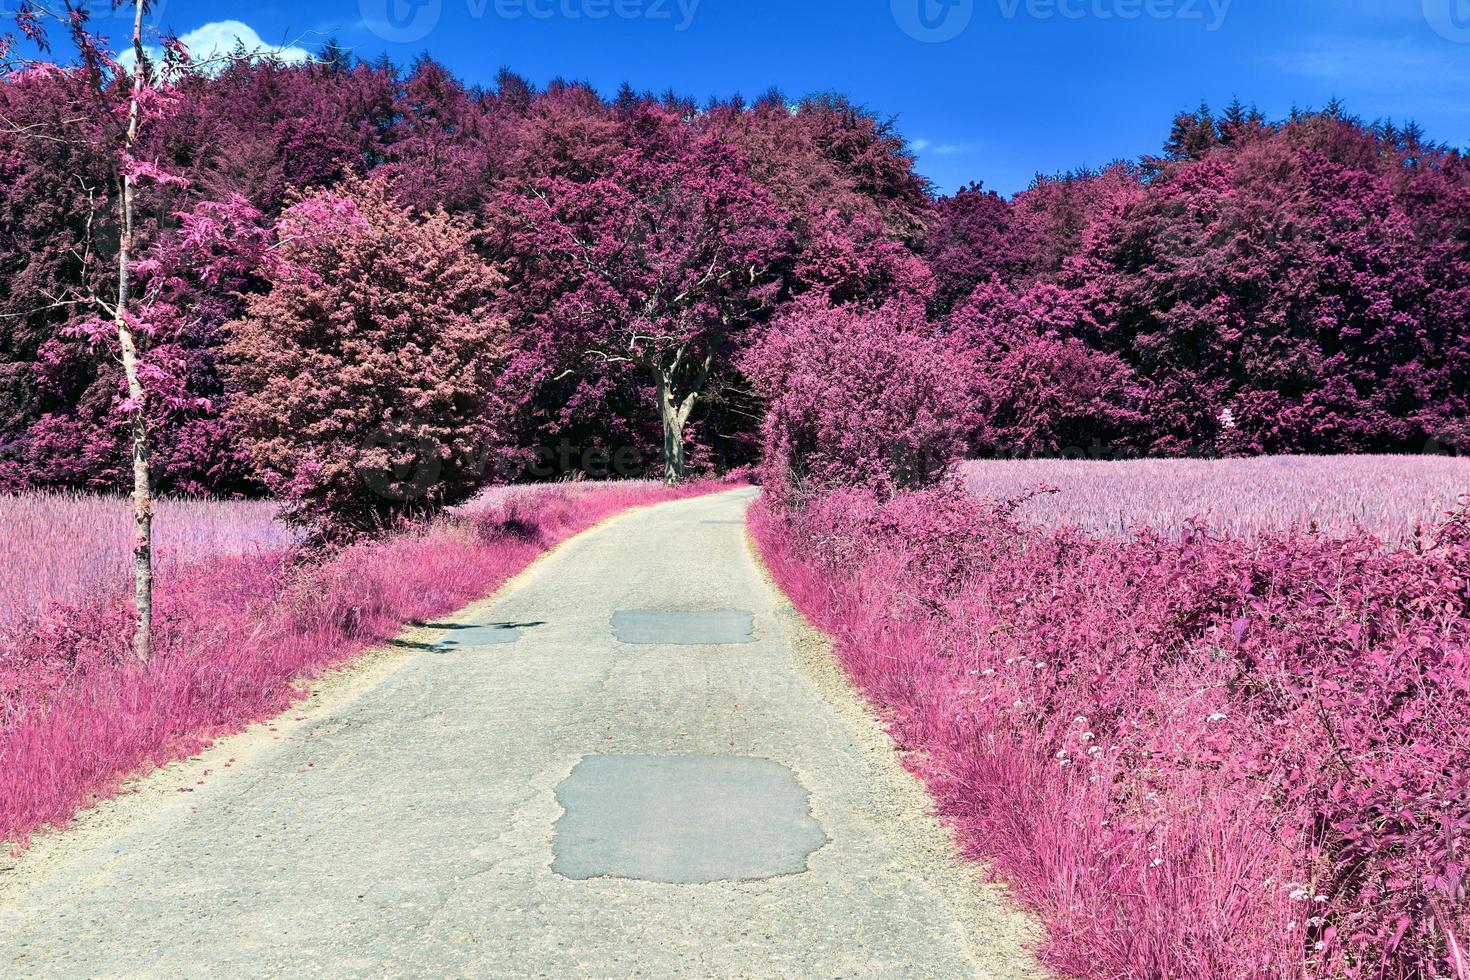 schöne lila Infrarotlandschaft in hoher Auflösung foto